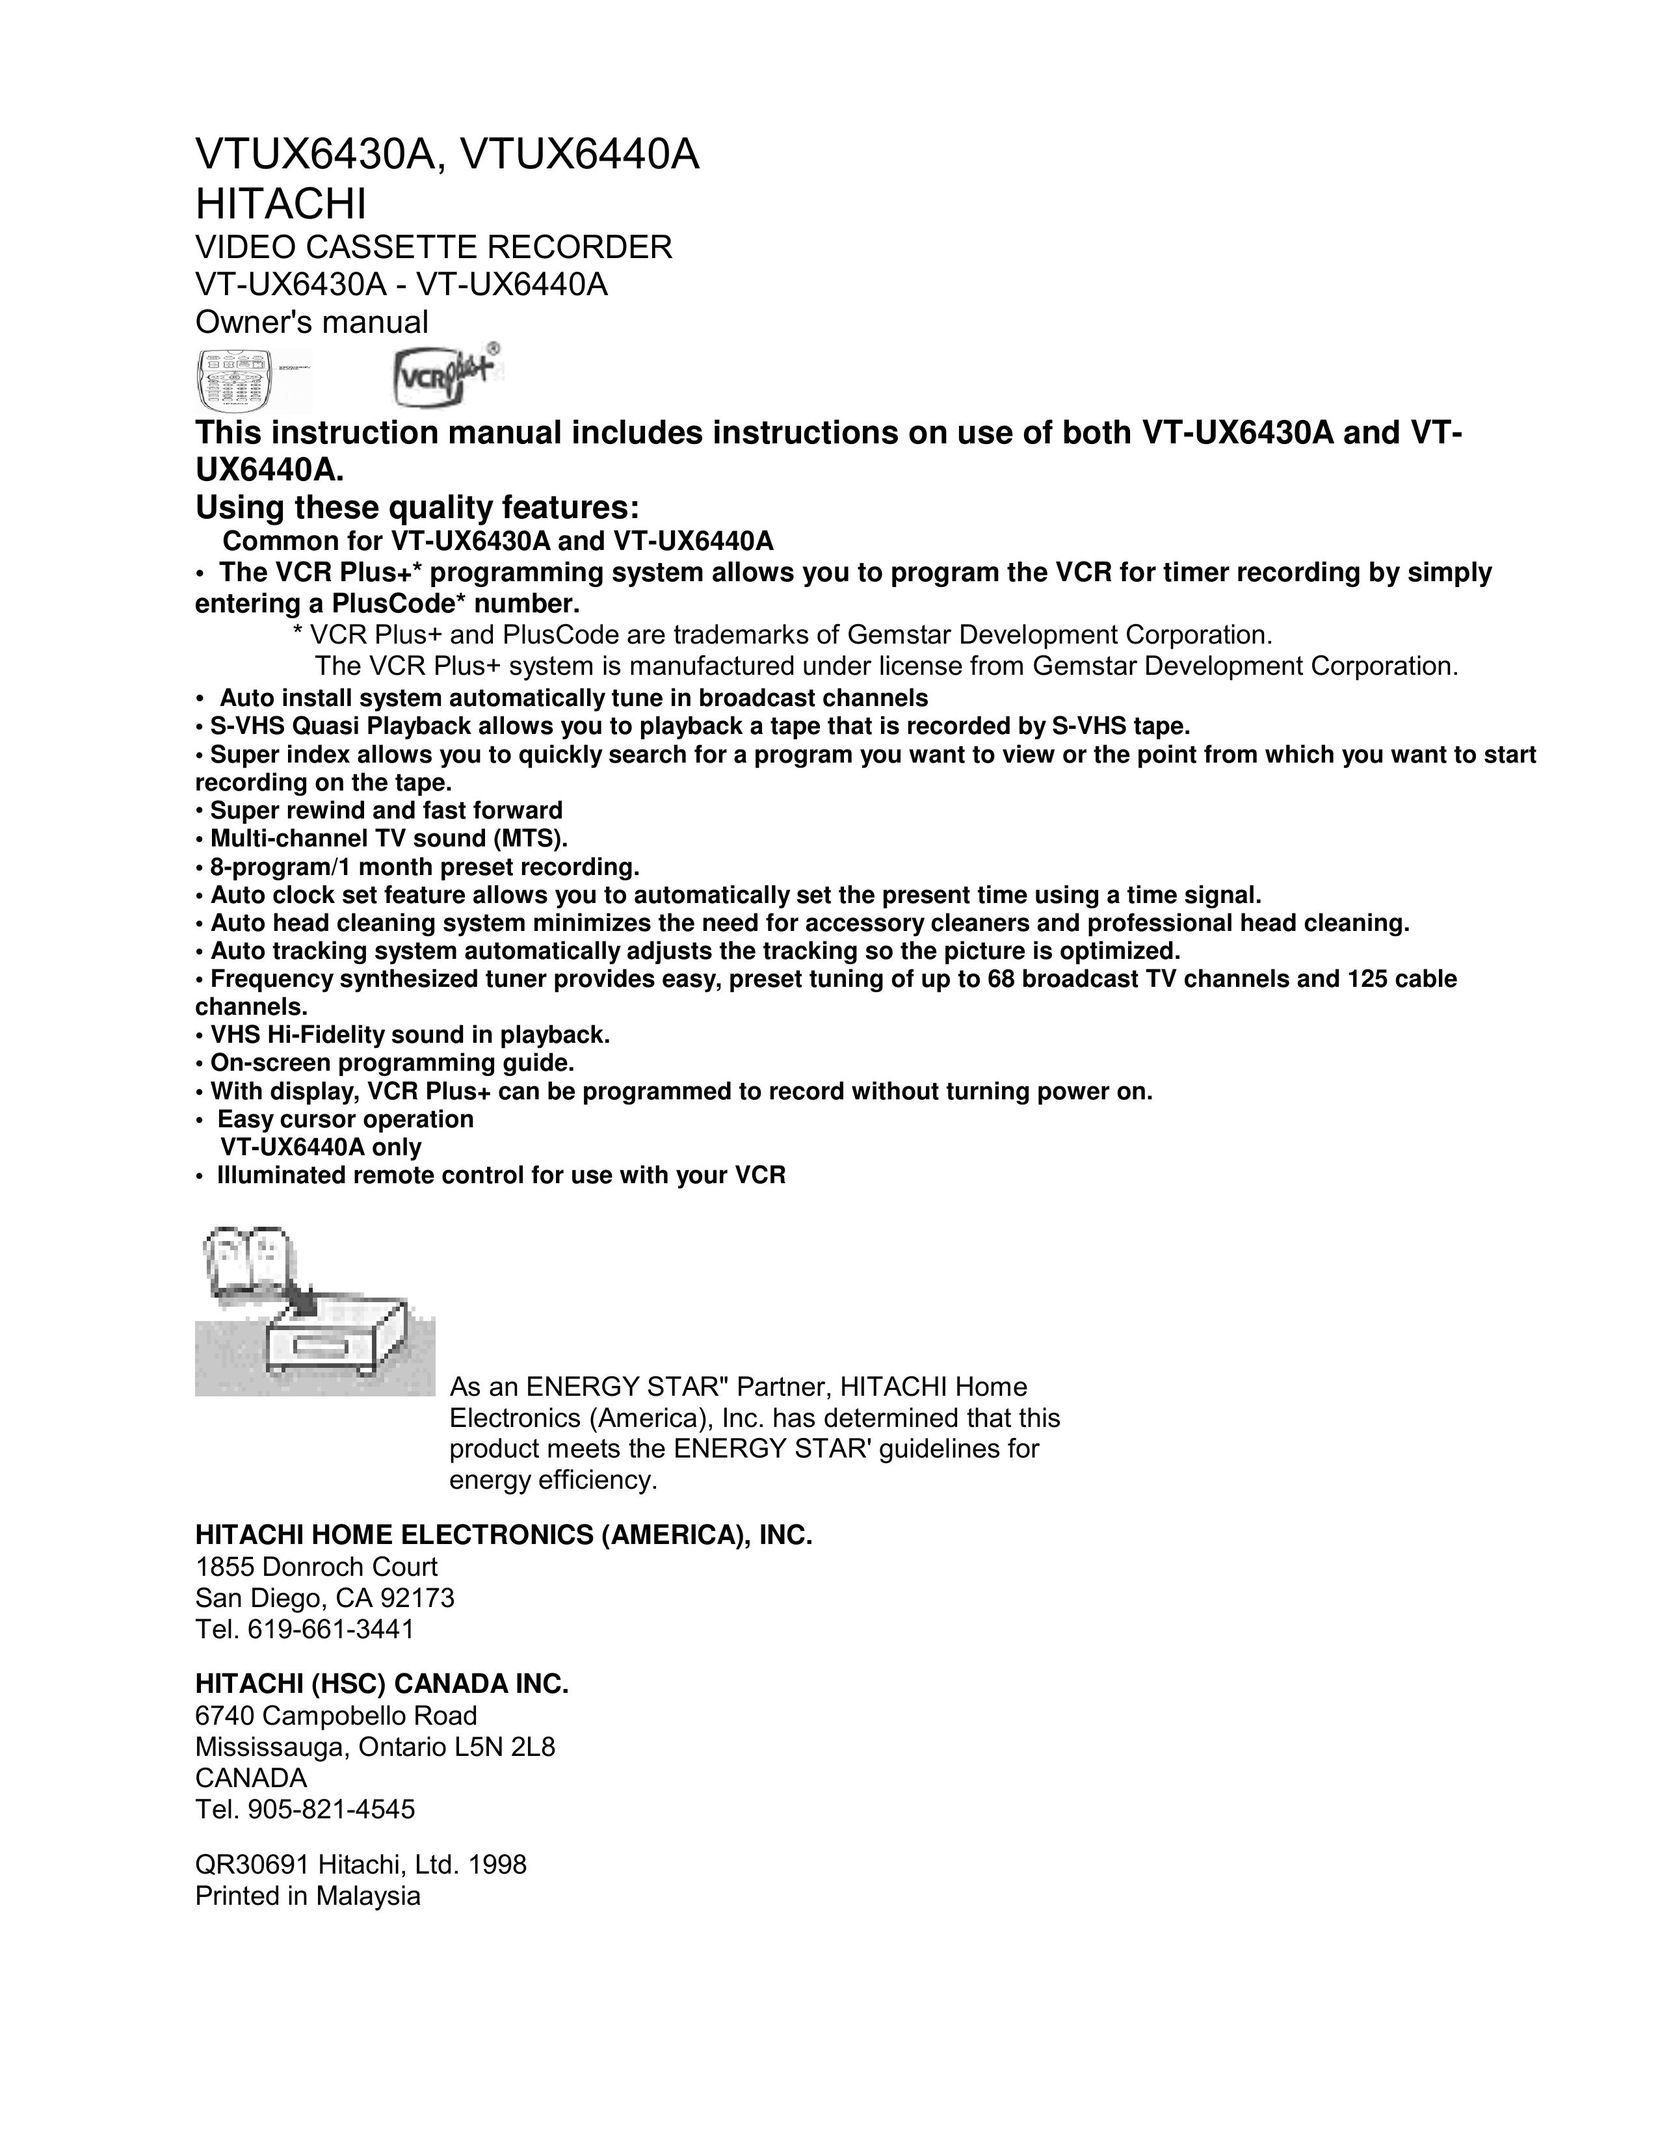 Hitachi VTUX6440A VCR User Manual